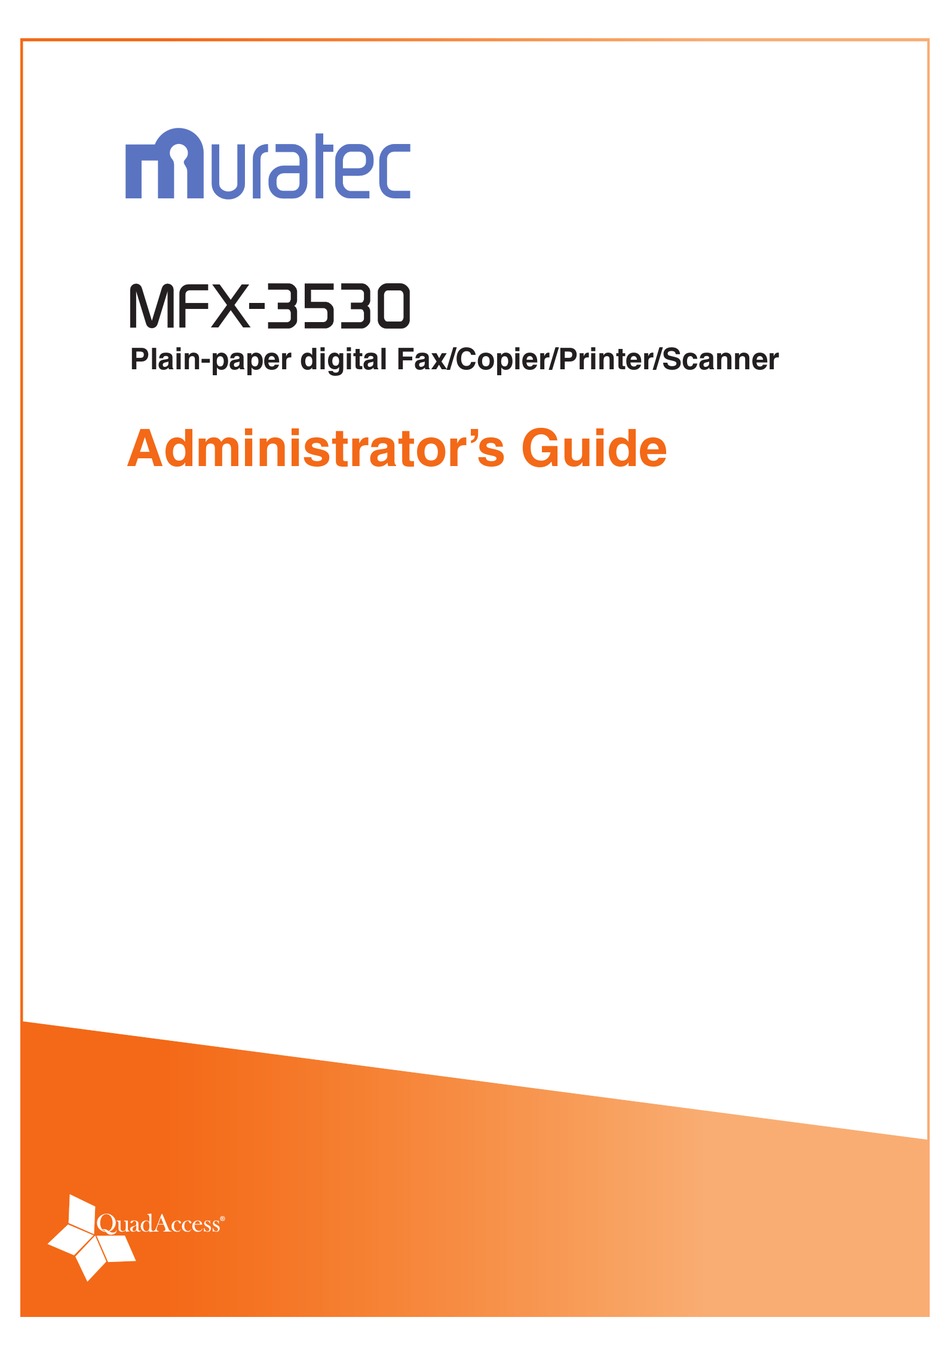 MURATEC MFX-3530 ADMINISTRATOR'S MANUAL Pdf Download | ManualsLib